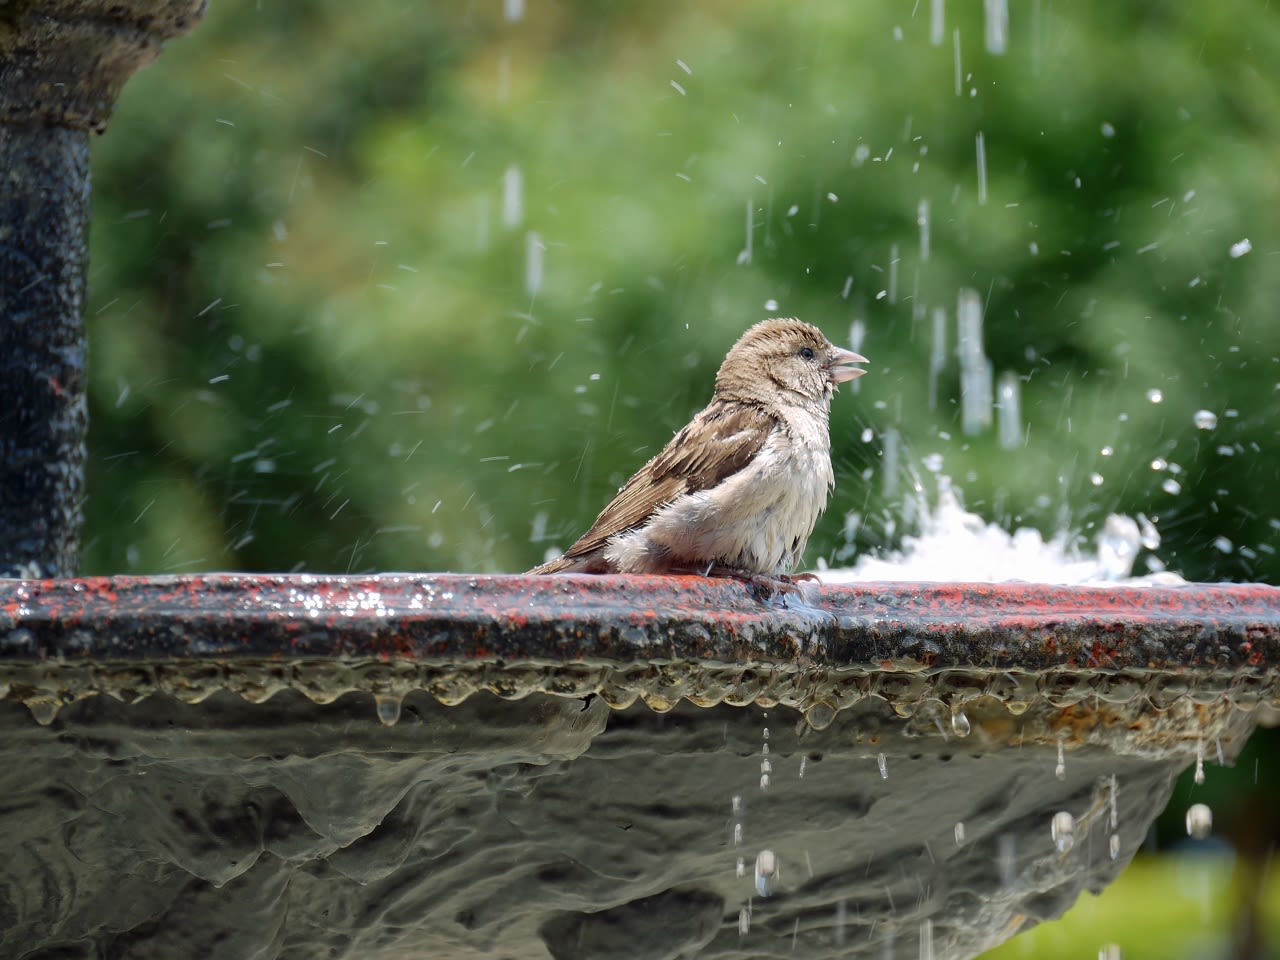 Vogel aan het baden. Foto: Adobe Stock / Cmon